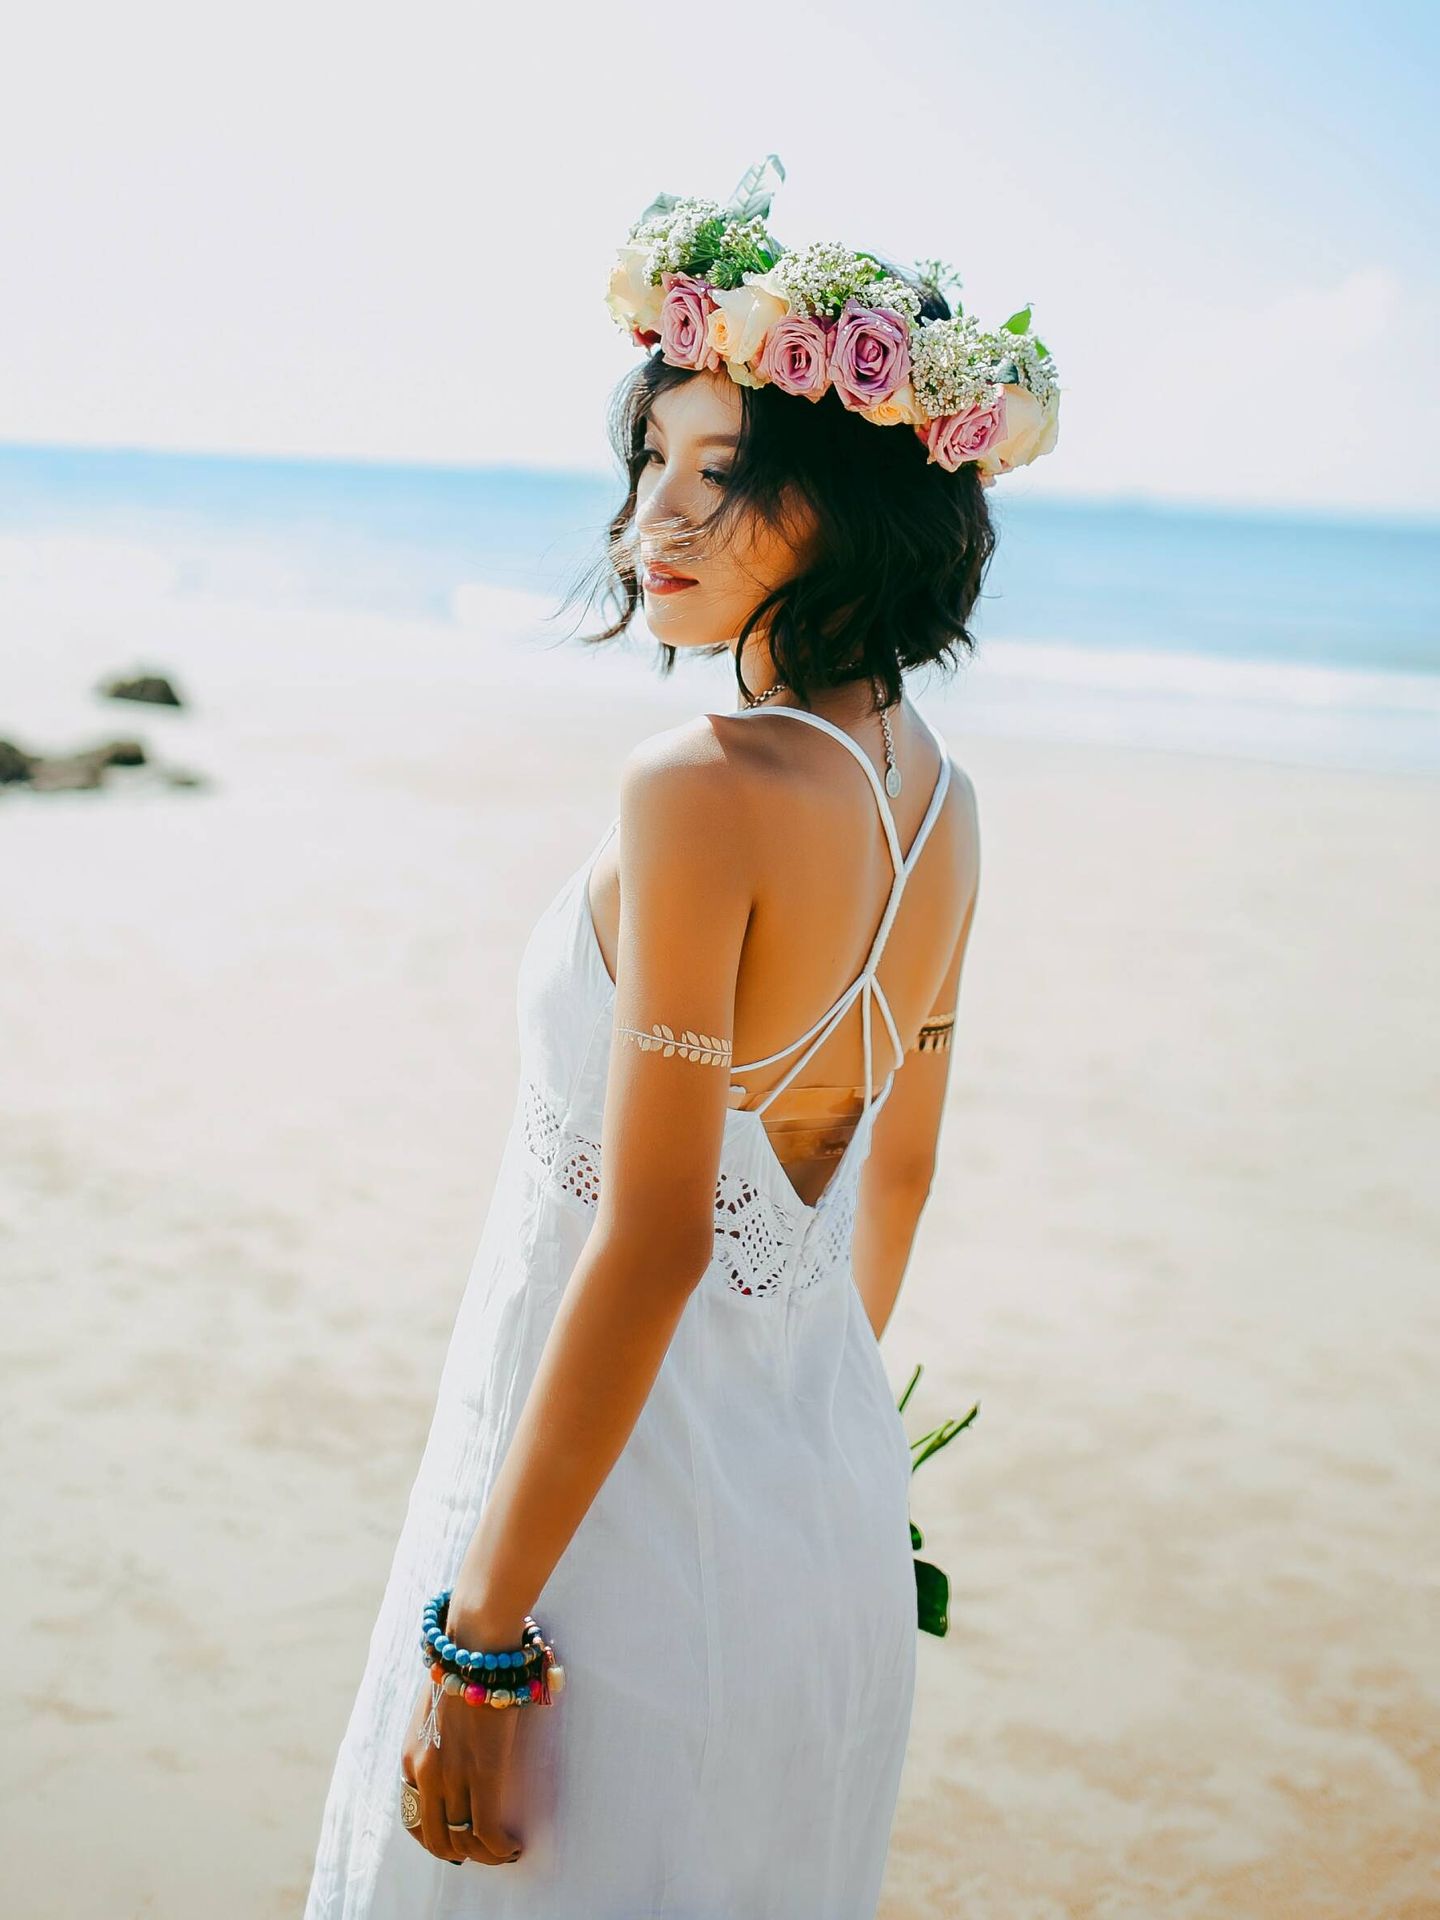 Cómo escoger el vestido de novia para una boda en la playa. (Anthony Tran para Unsplash)